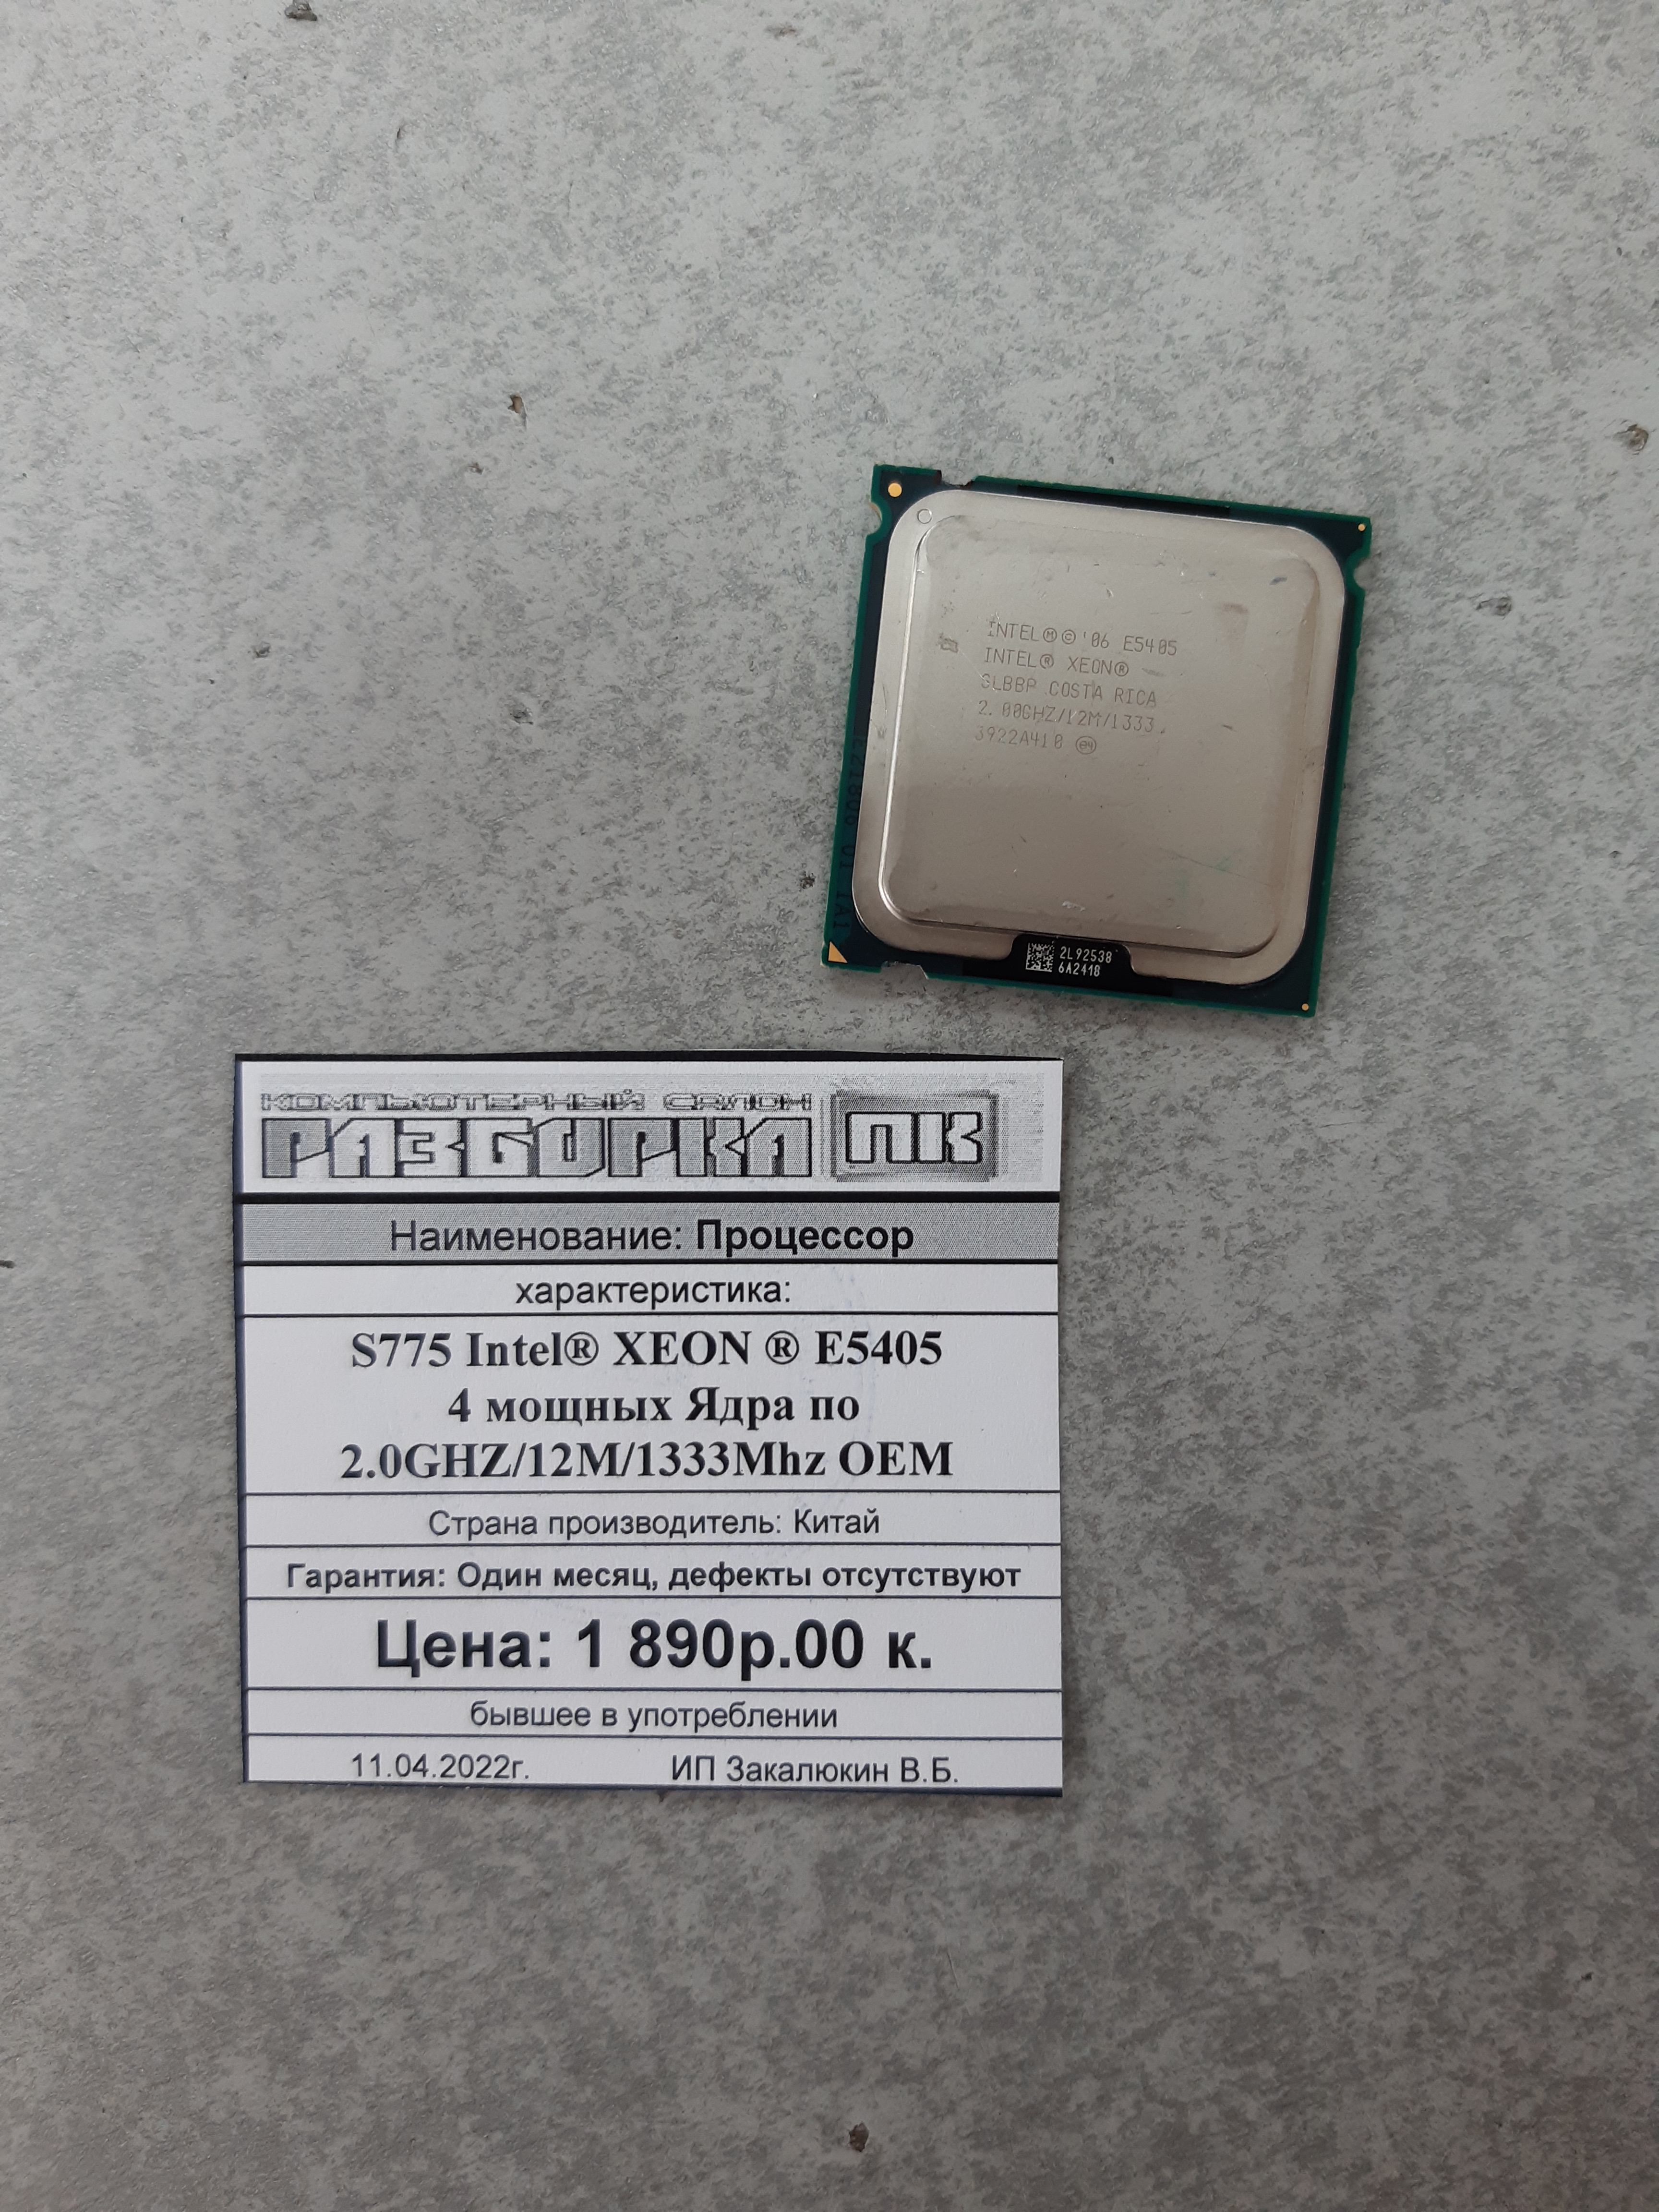 Процессор S775 Intel® XEON ® E5405